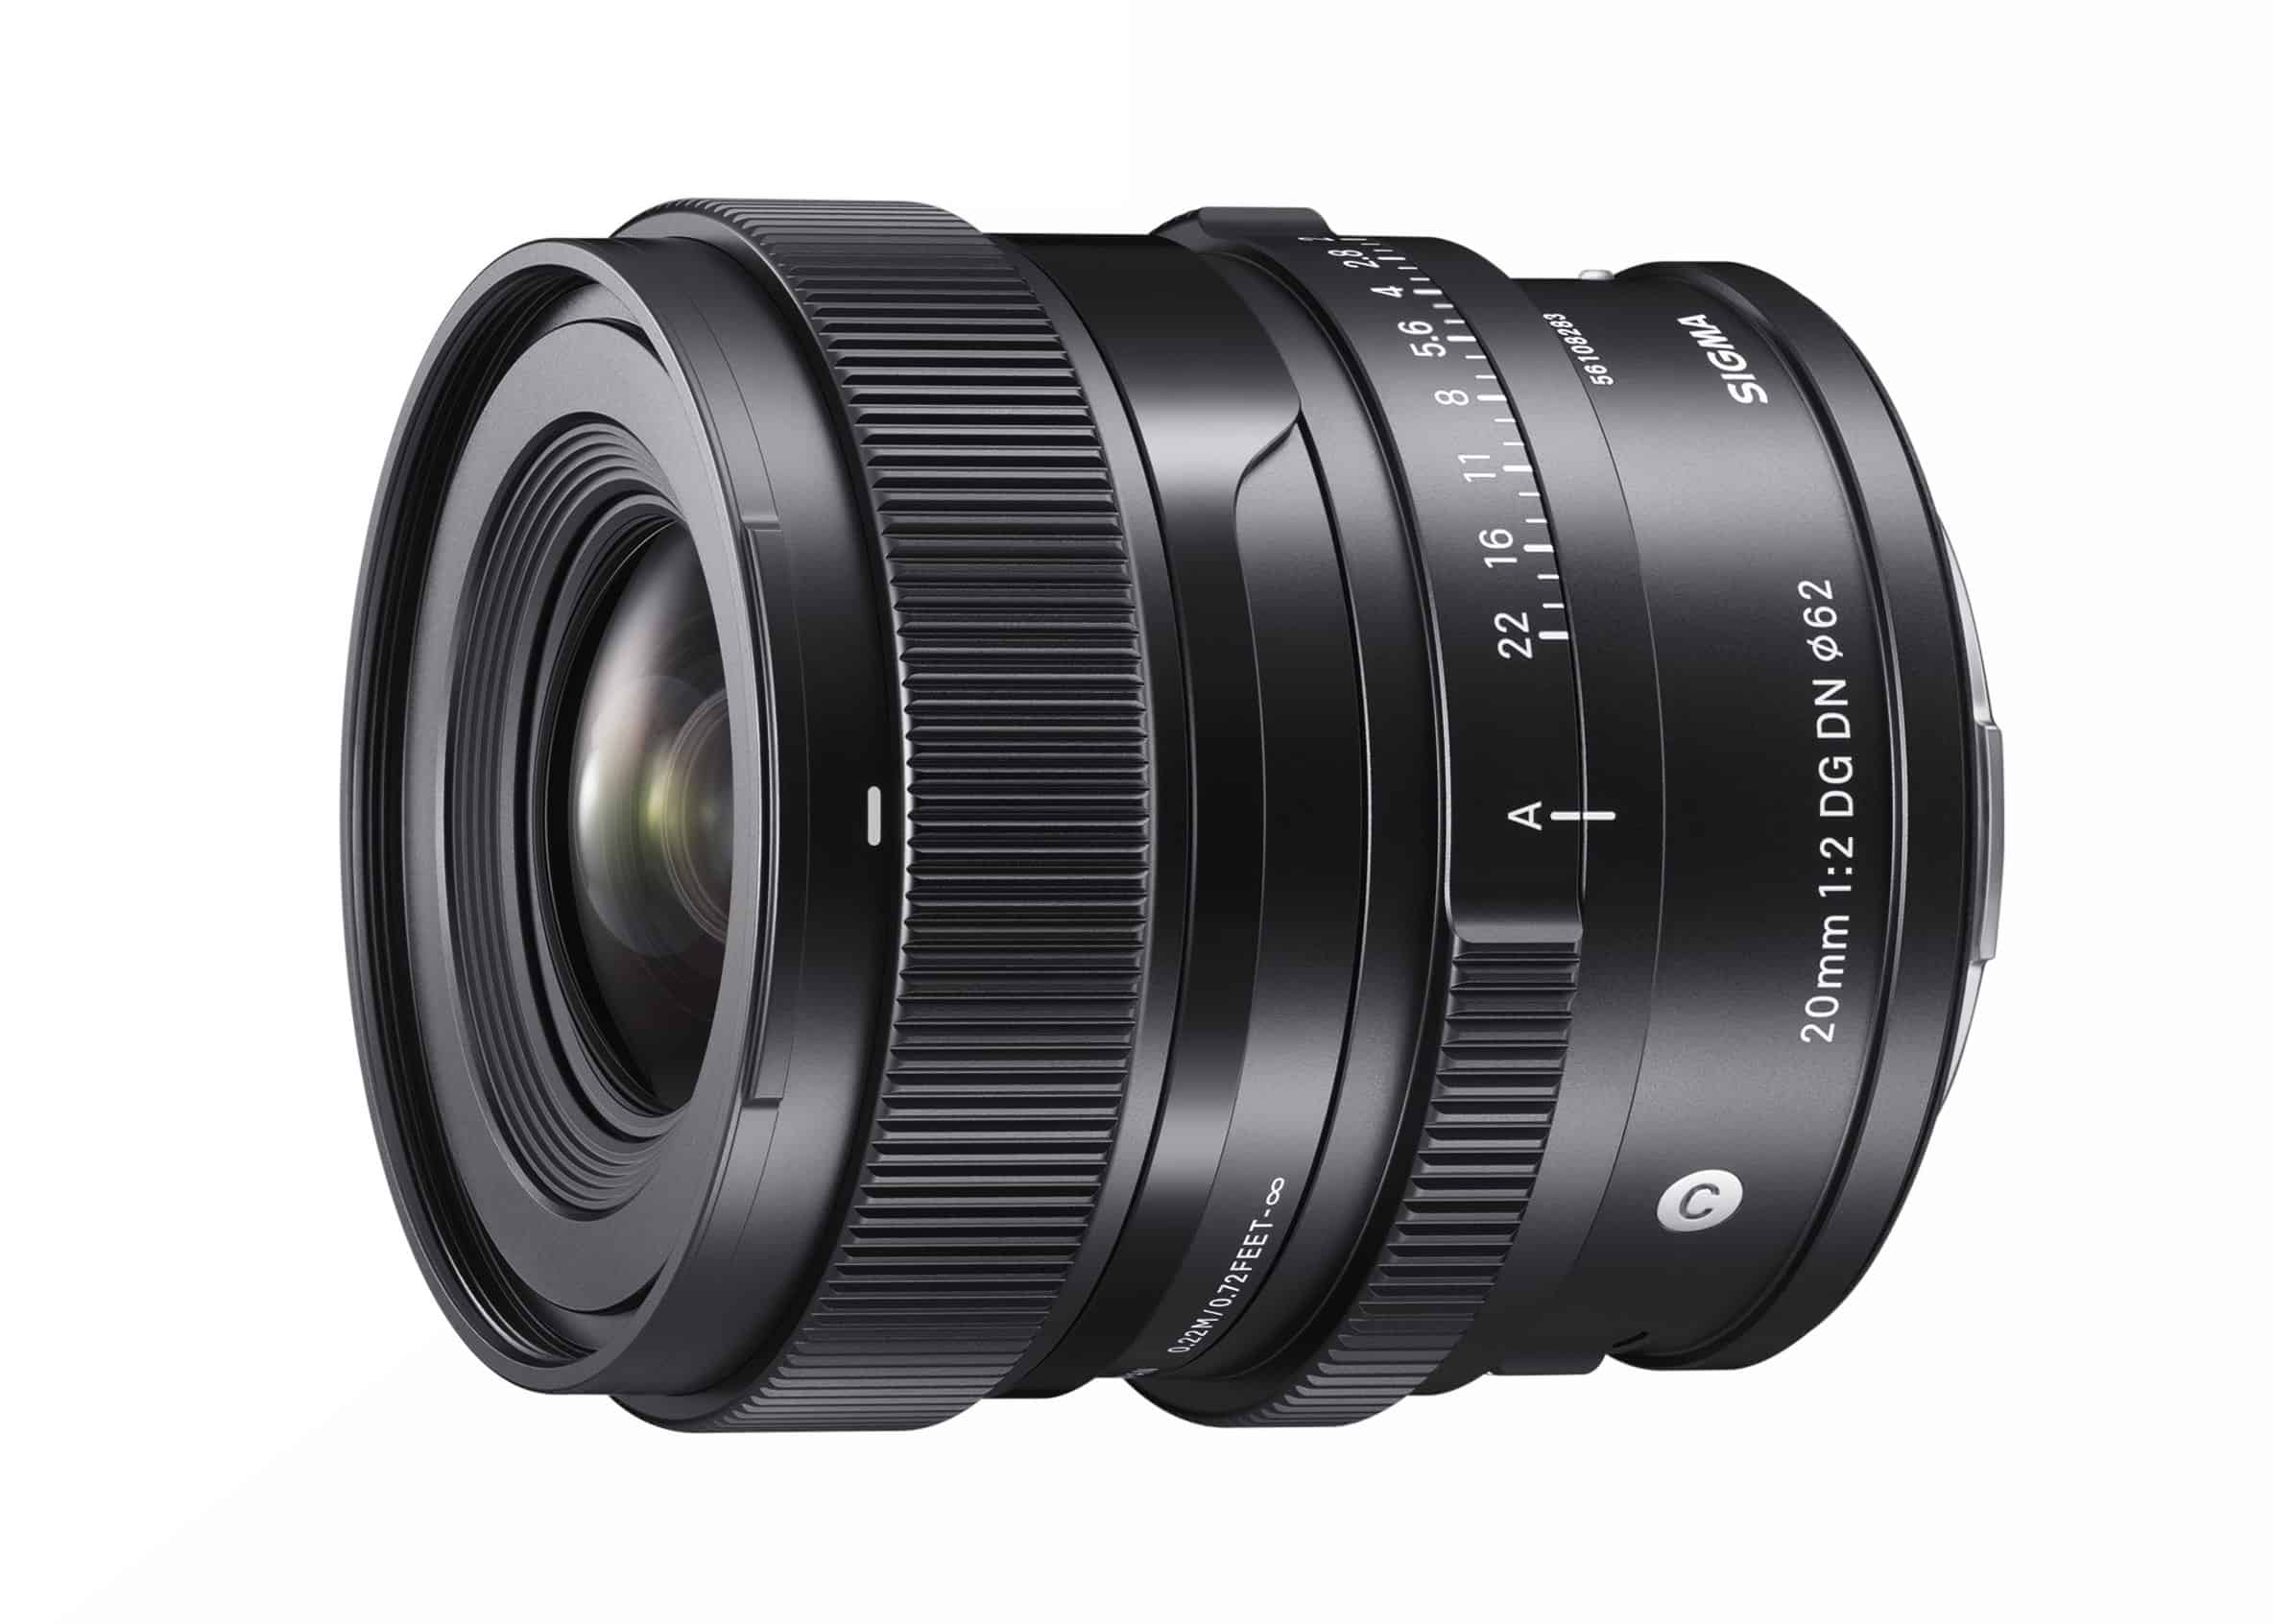 Sigma ra mắt ống kính 20mm F2 DG DN cao cấp dành cho Sony E và Leica L, vẫn chưa có ống kính ngàm X!